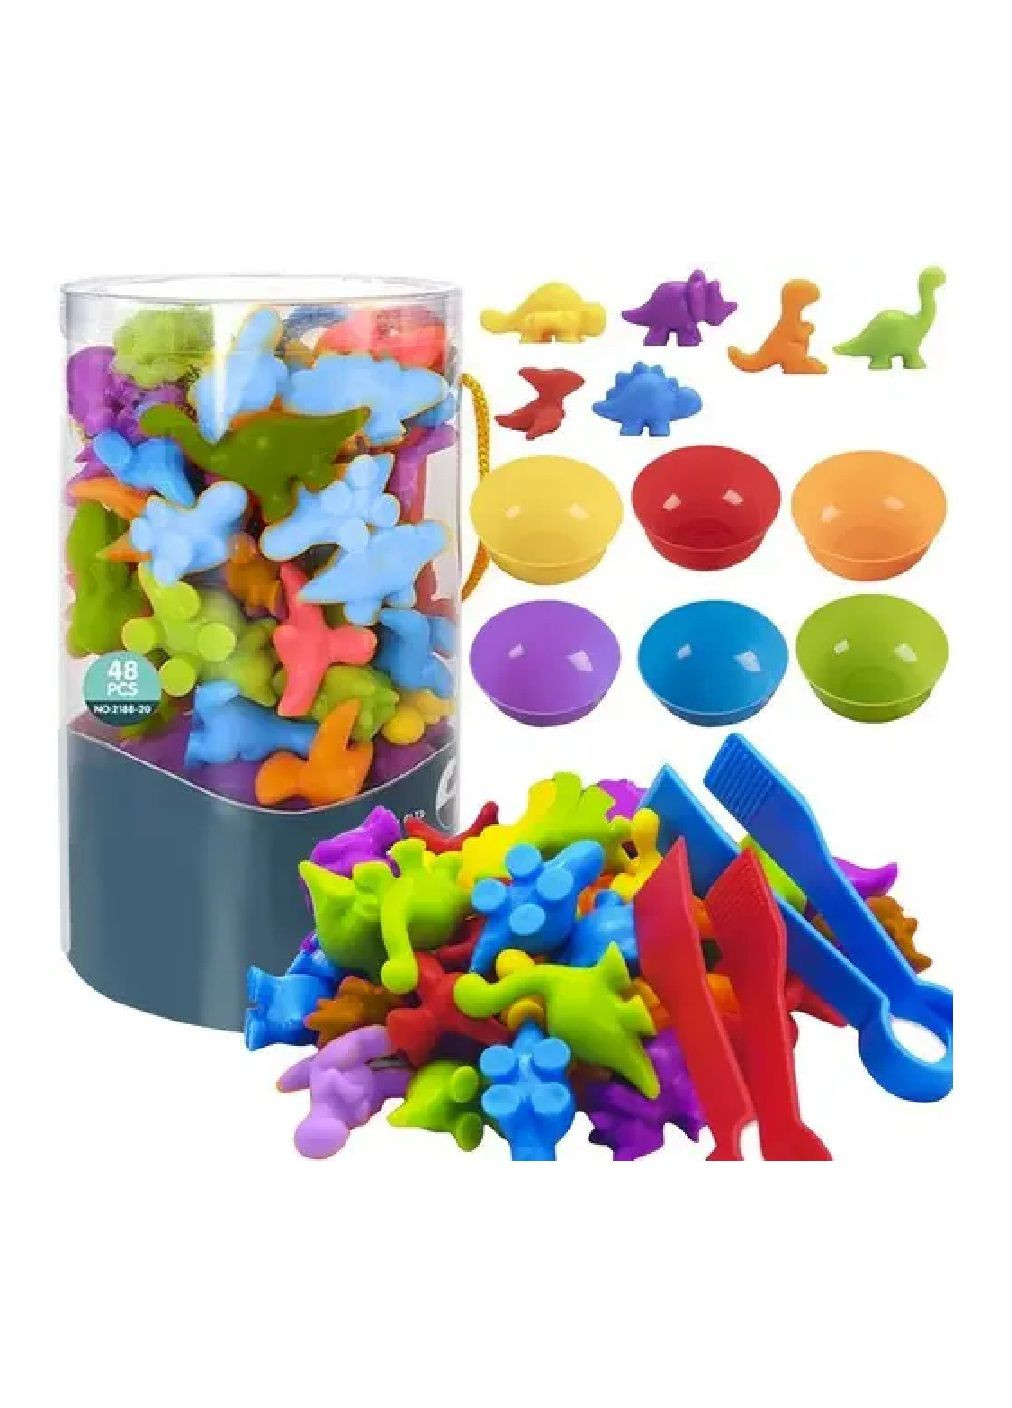 Комплект набор игровой обучающий развивающий для детей малышей счетов цветов фигурок динозавриков (476420-Prob) Unbranded (281326417)